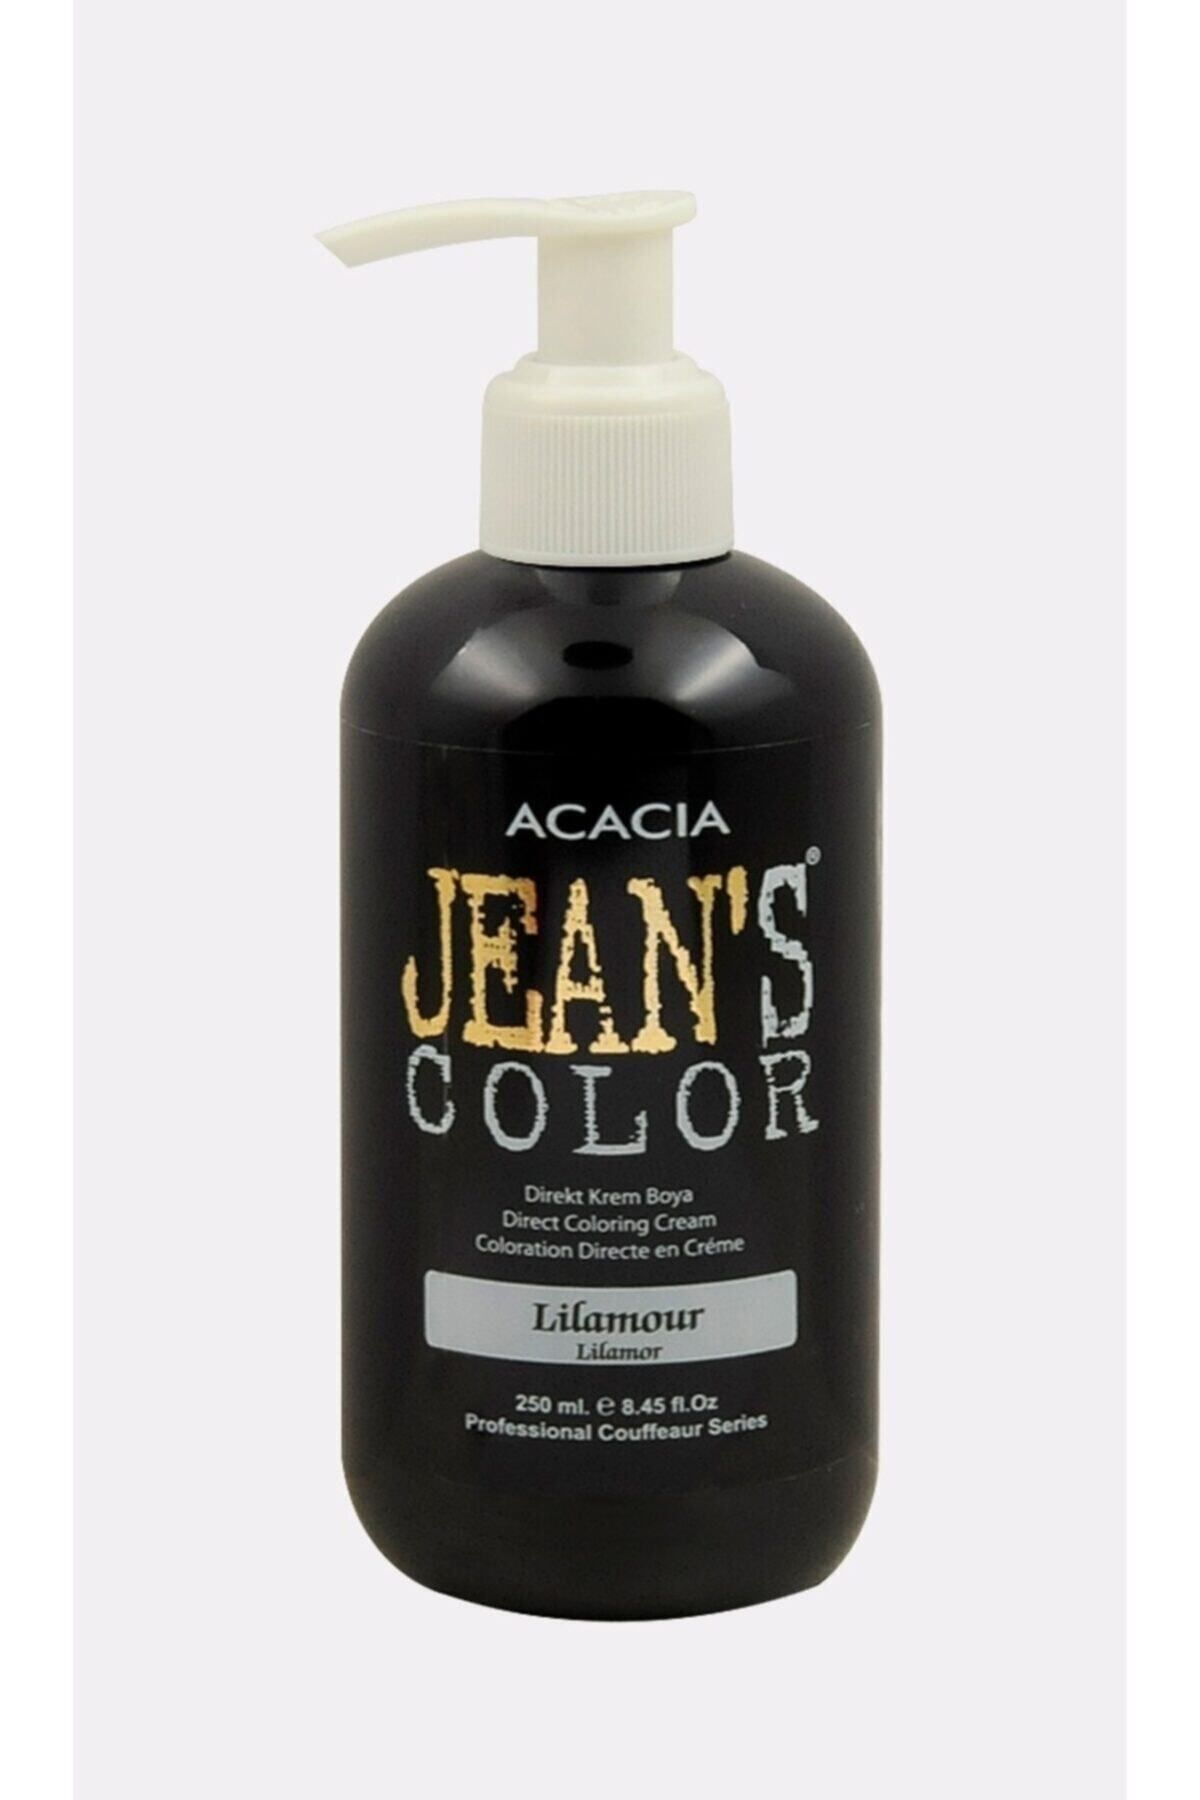 Acacia Jeans Color Saç Boyası Lilamor 250ml Lilamor